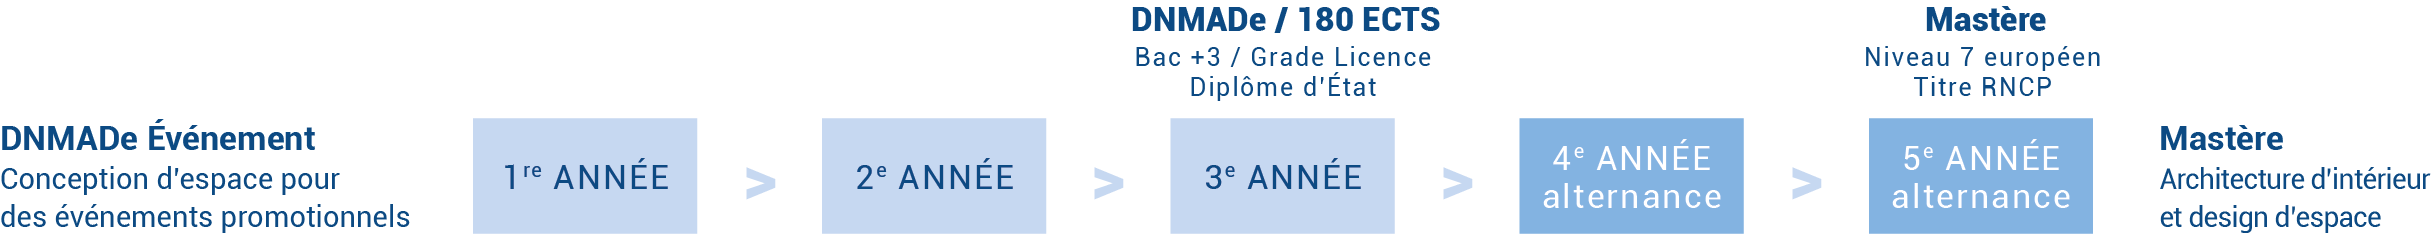 Schéma des études DNMADe Événement + Mastère Architecture